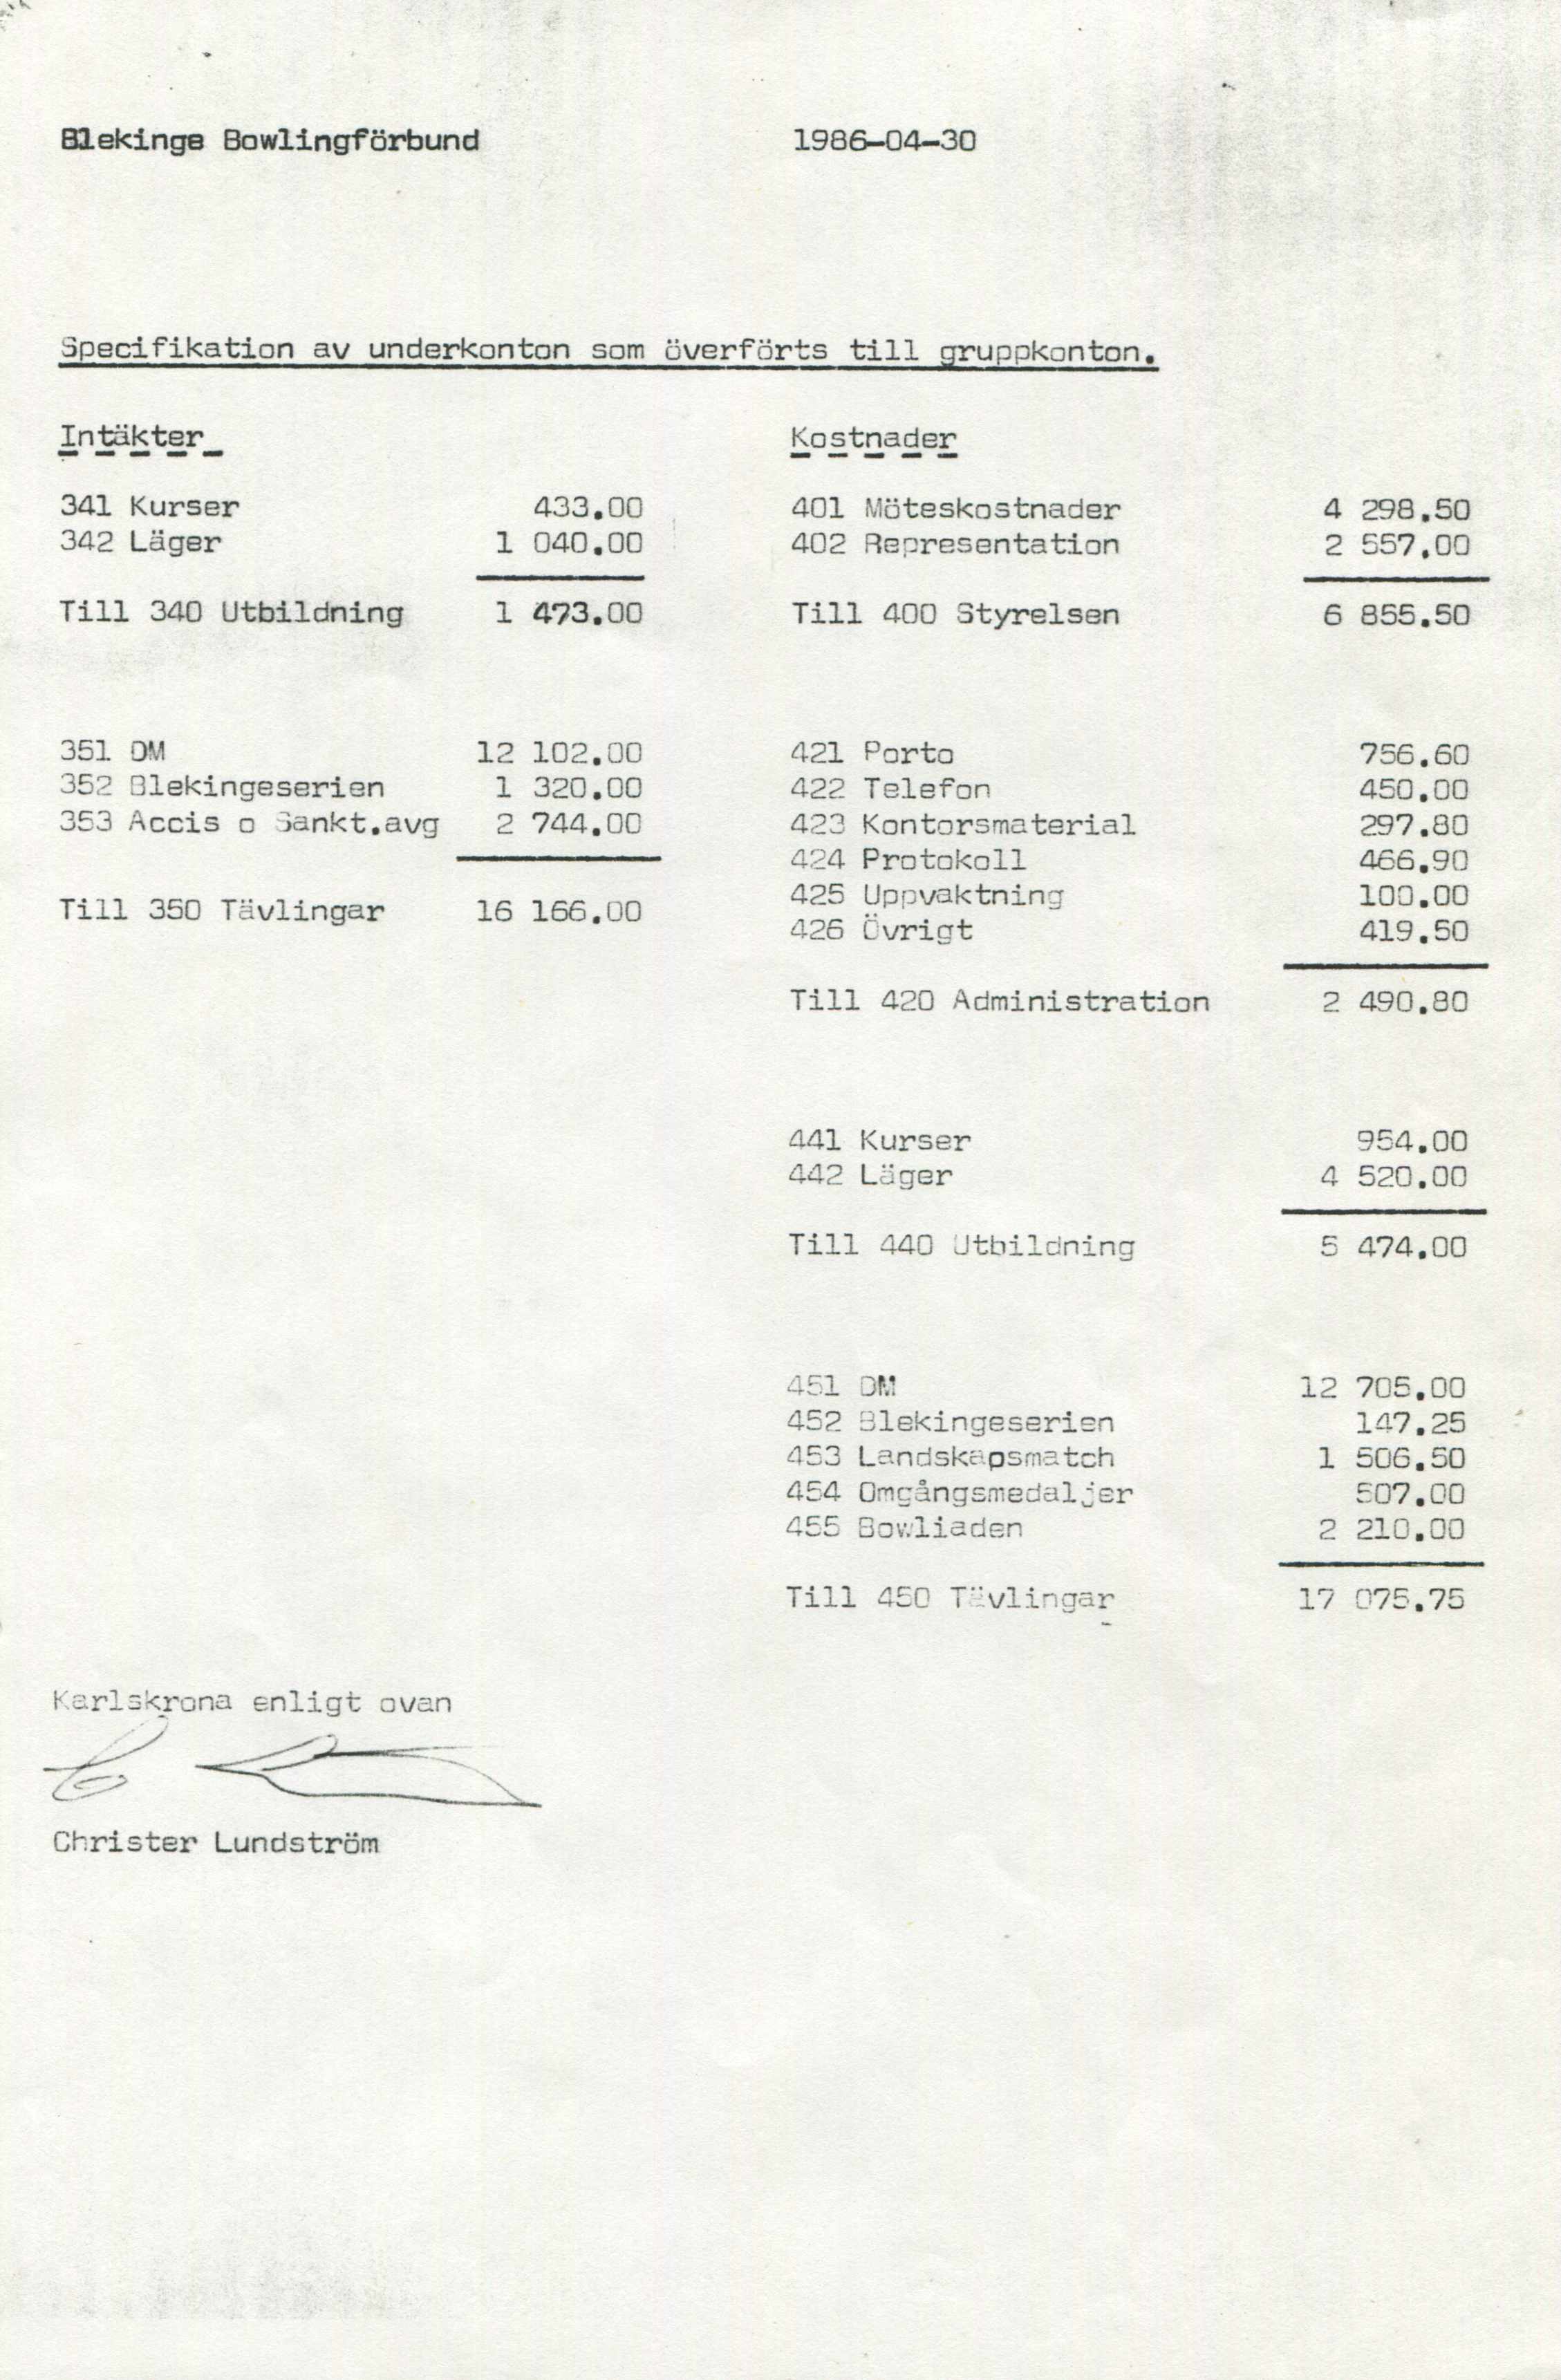 Blekinge Bowlingförbund 1986-04-30 Specifikation av underkonton som överforts till gruppkonton, Intäkter 341 Kurser 433.00 342 Läger 1 040.00 Till 340 Utbildning 1 473.